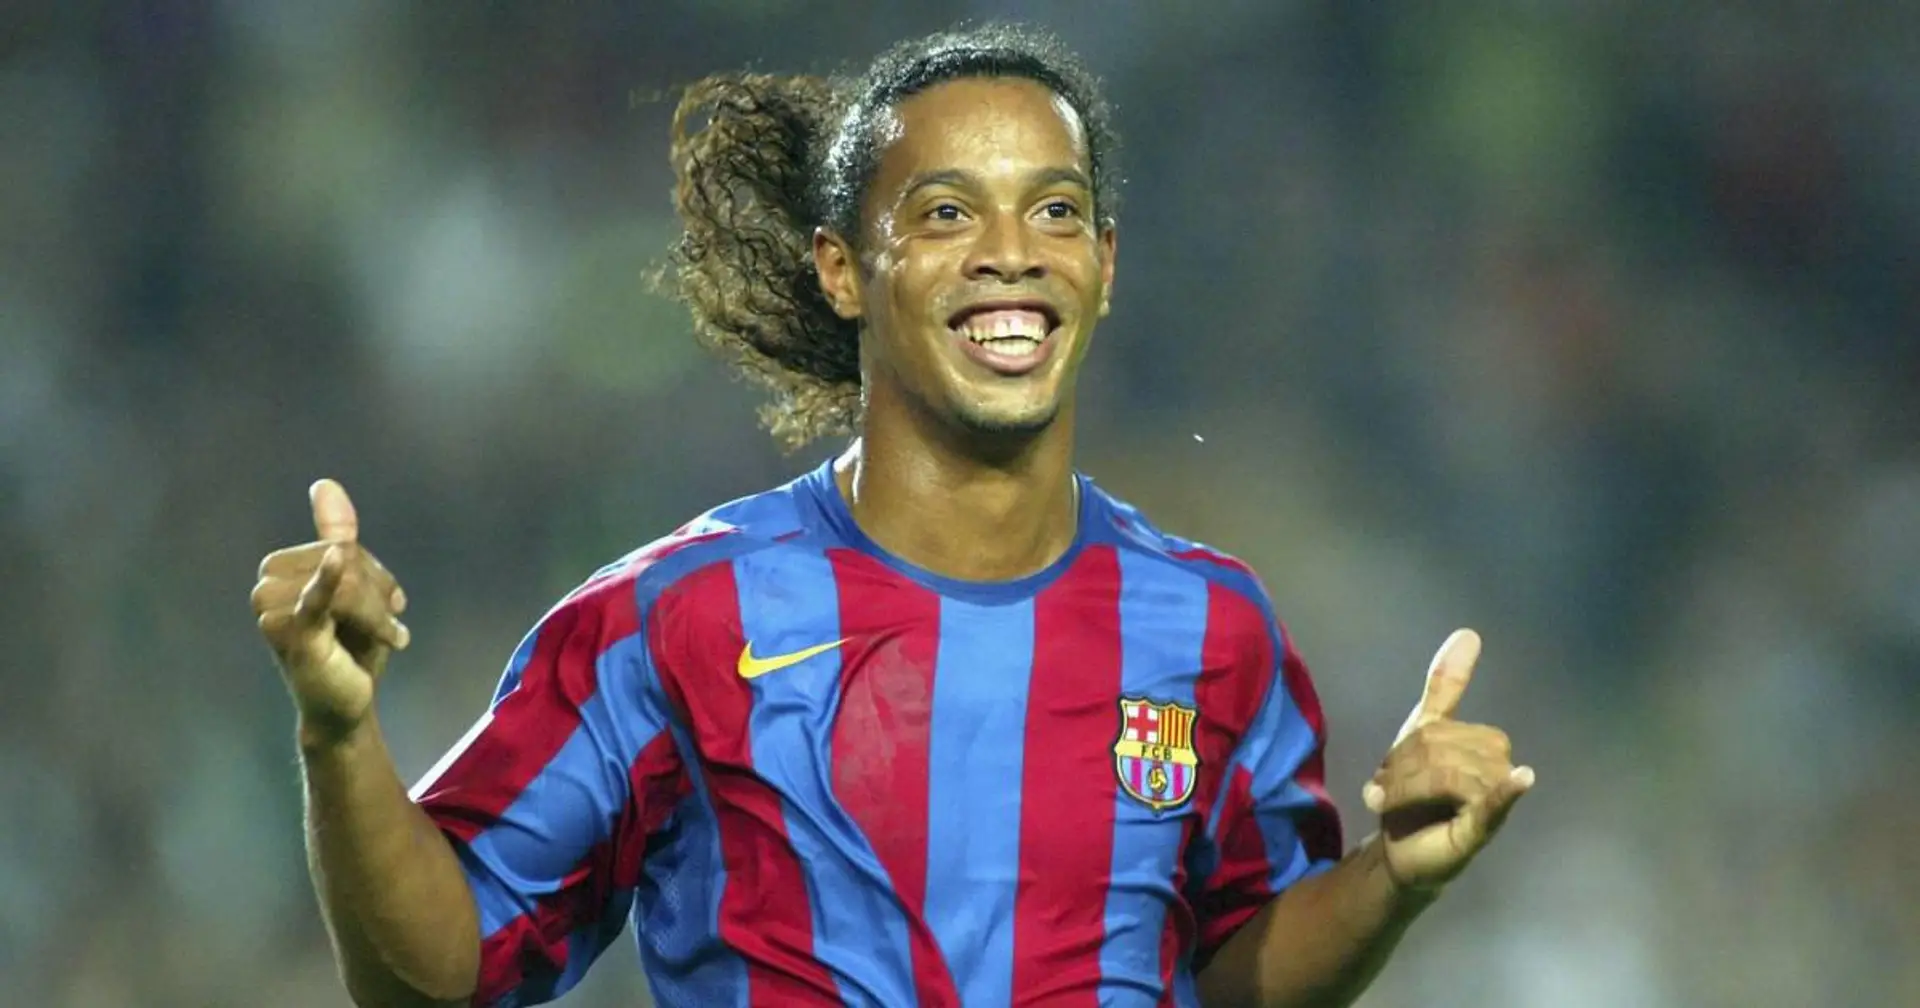 La liste des défenseurs les plus forts contre lesquels Ronaldinho a été confronté est trop courte - juste 2 légendes